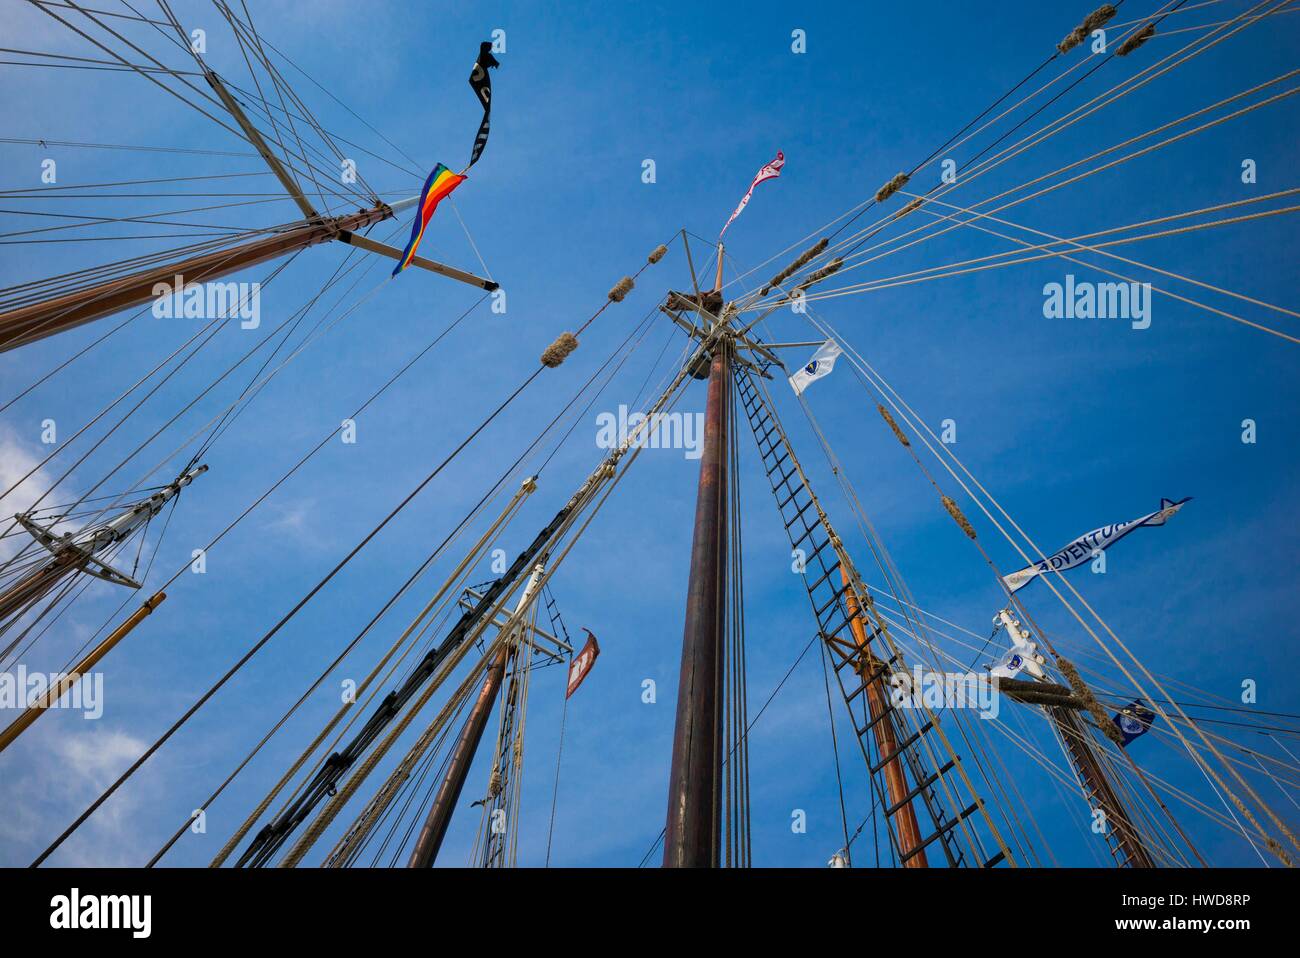 United States, Massachusetts, Cape Ann, Gloucester, America's Oldest Seaport, Annual Schooner Festival, schooner rigging Stock Photo